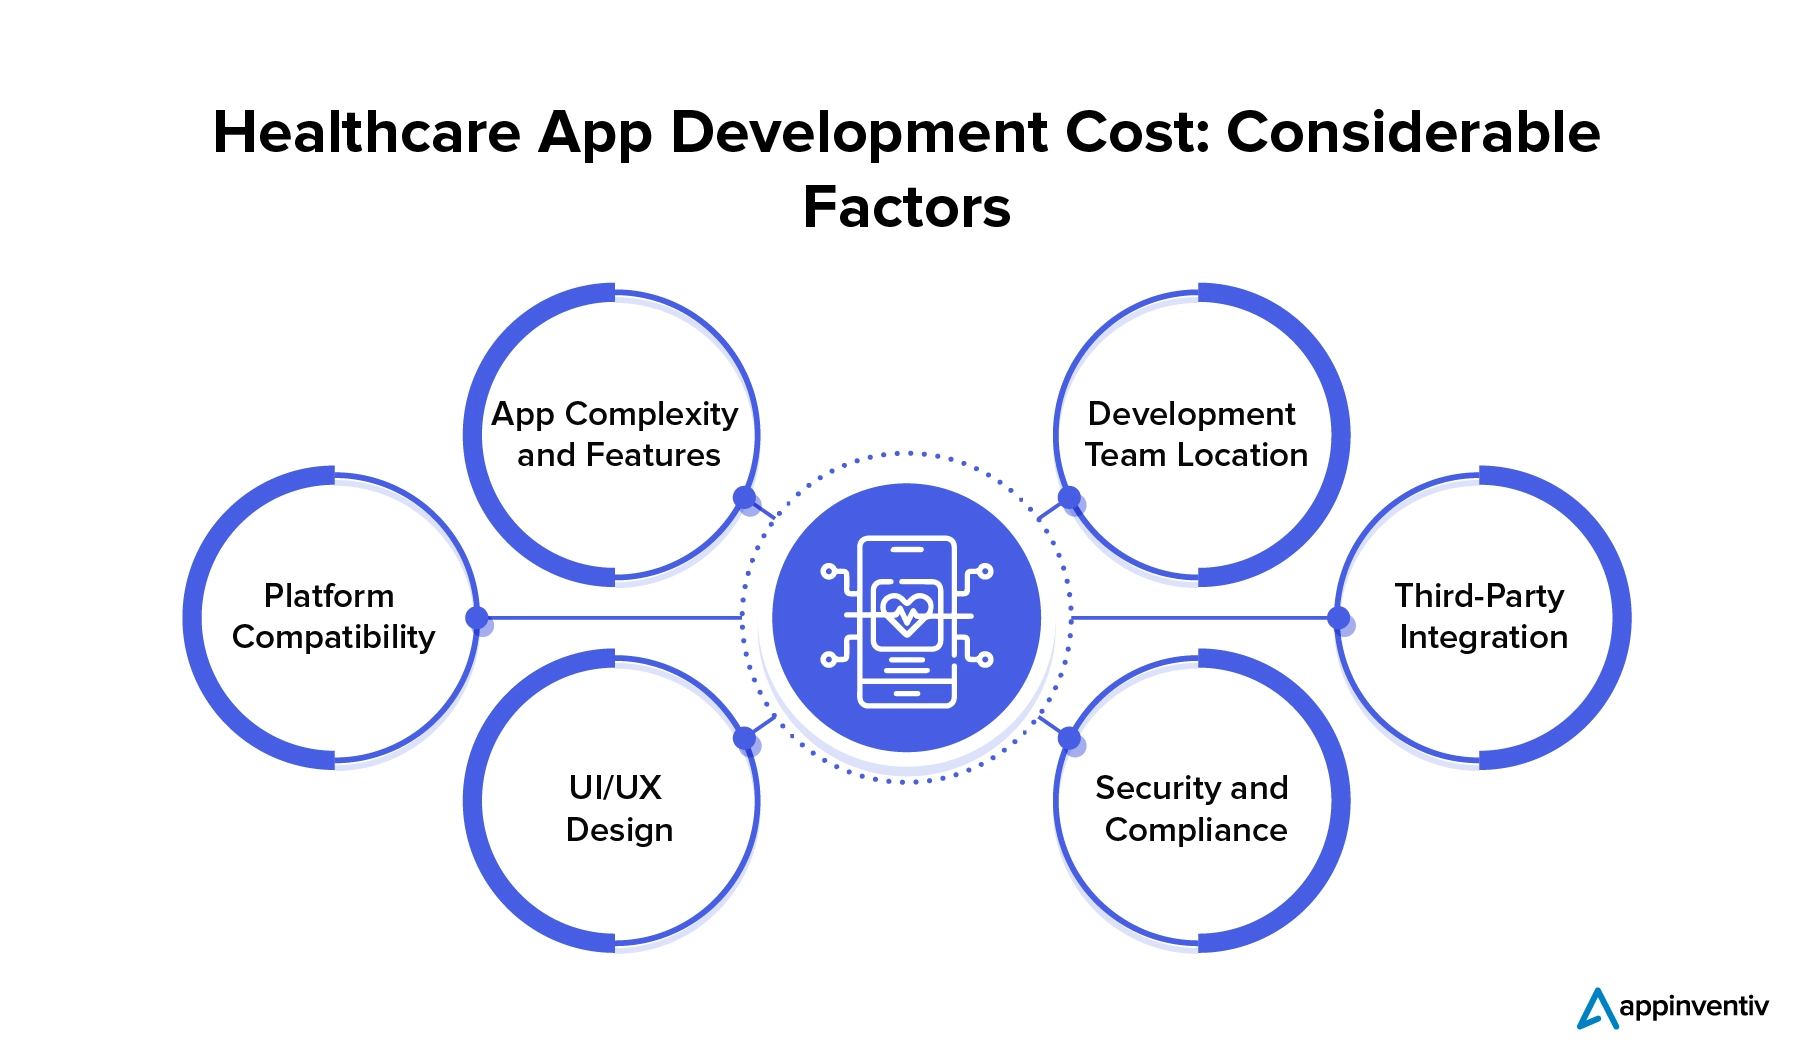 Healthcare App Development Cost: Considerable Factors